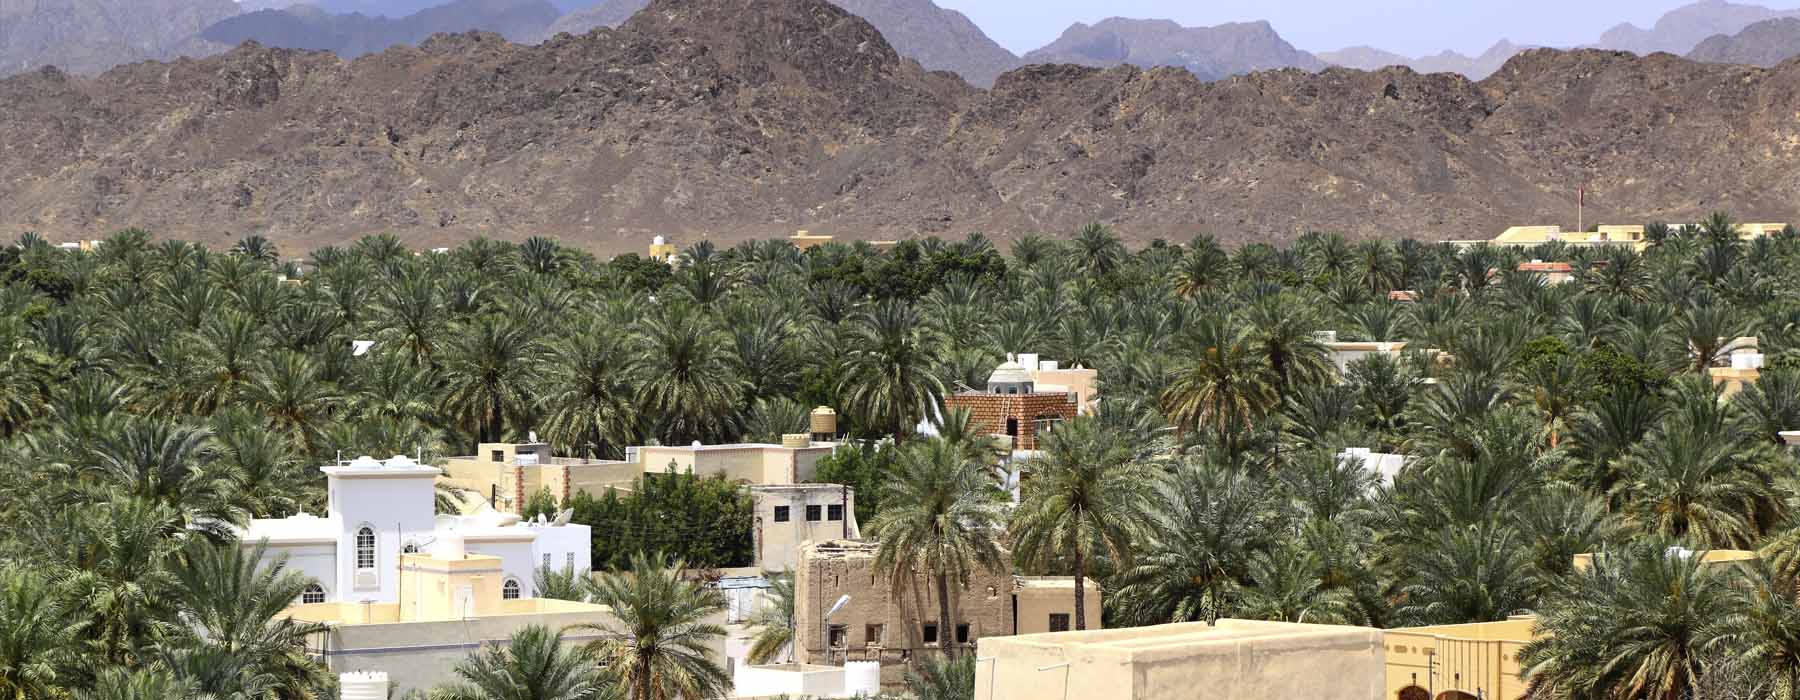 Oman<br class="hidden-md hidden-lg" /> Christmas Holidays